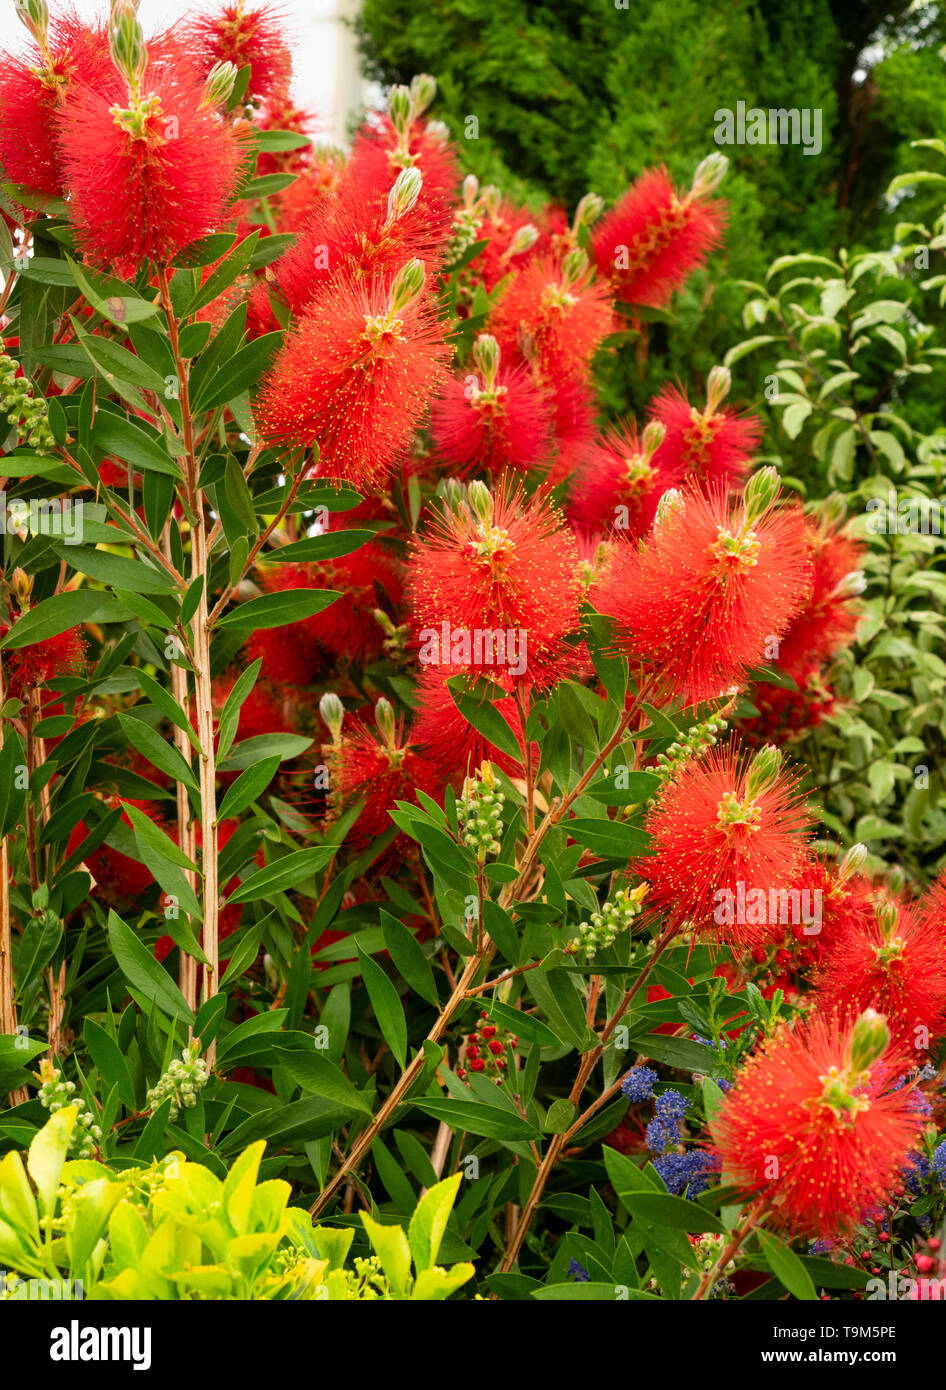 Massed red stamens of the spring to summer flowering  Australian bottlebrush, Callistemon citrinus 'Splendens' Stock Photo